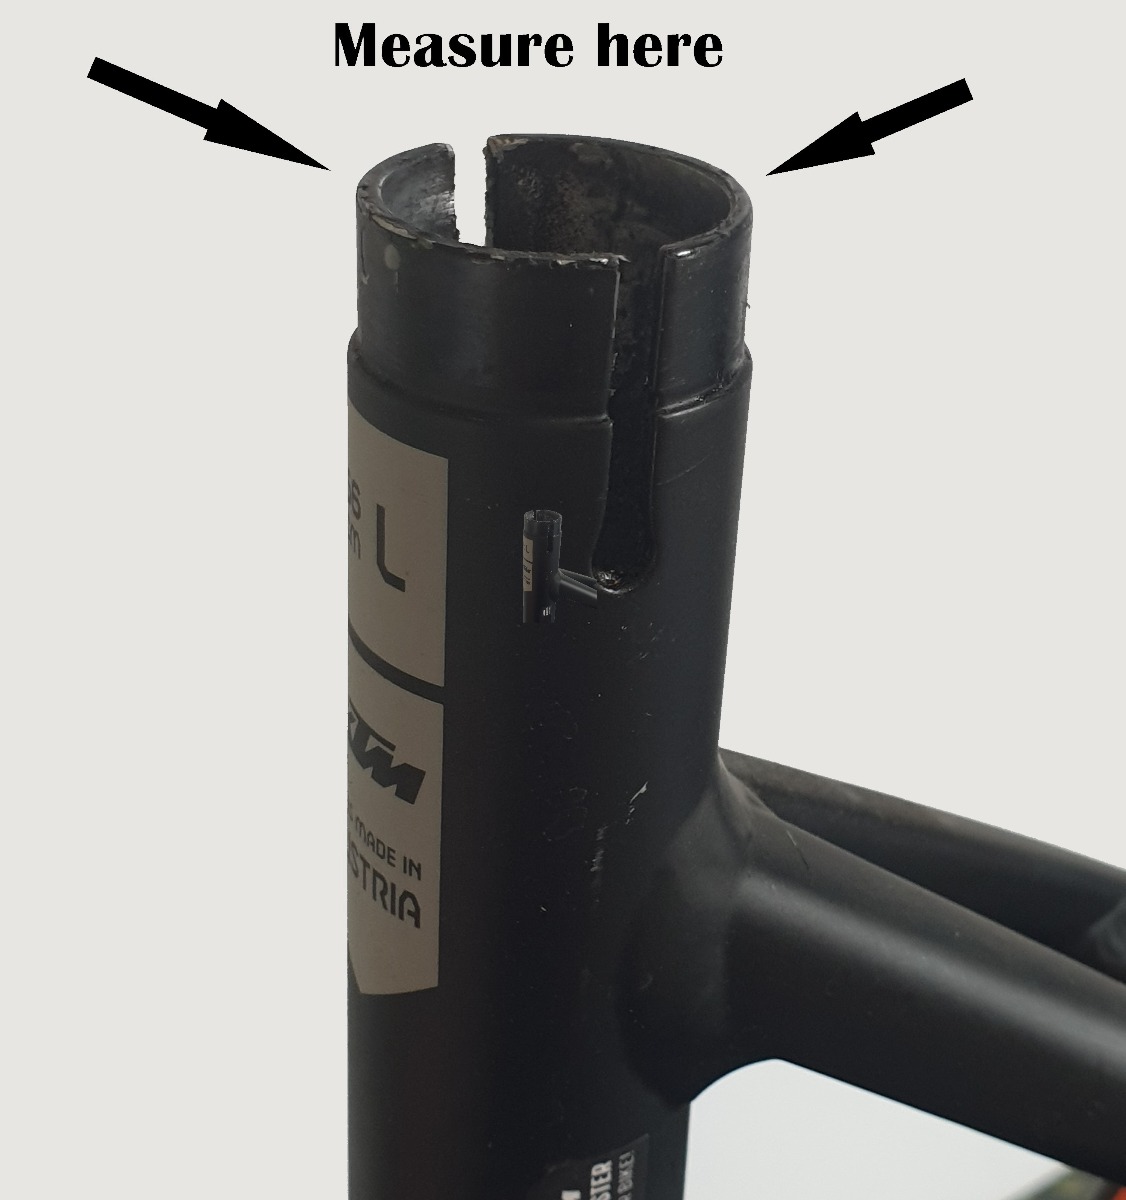 Measure saddle clamp